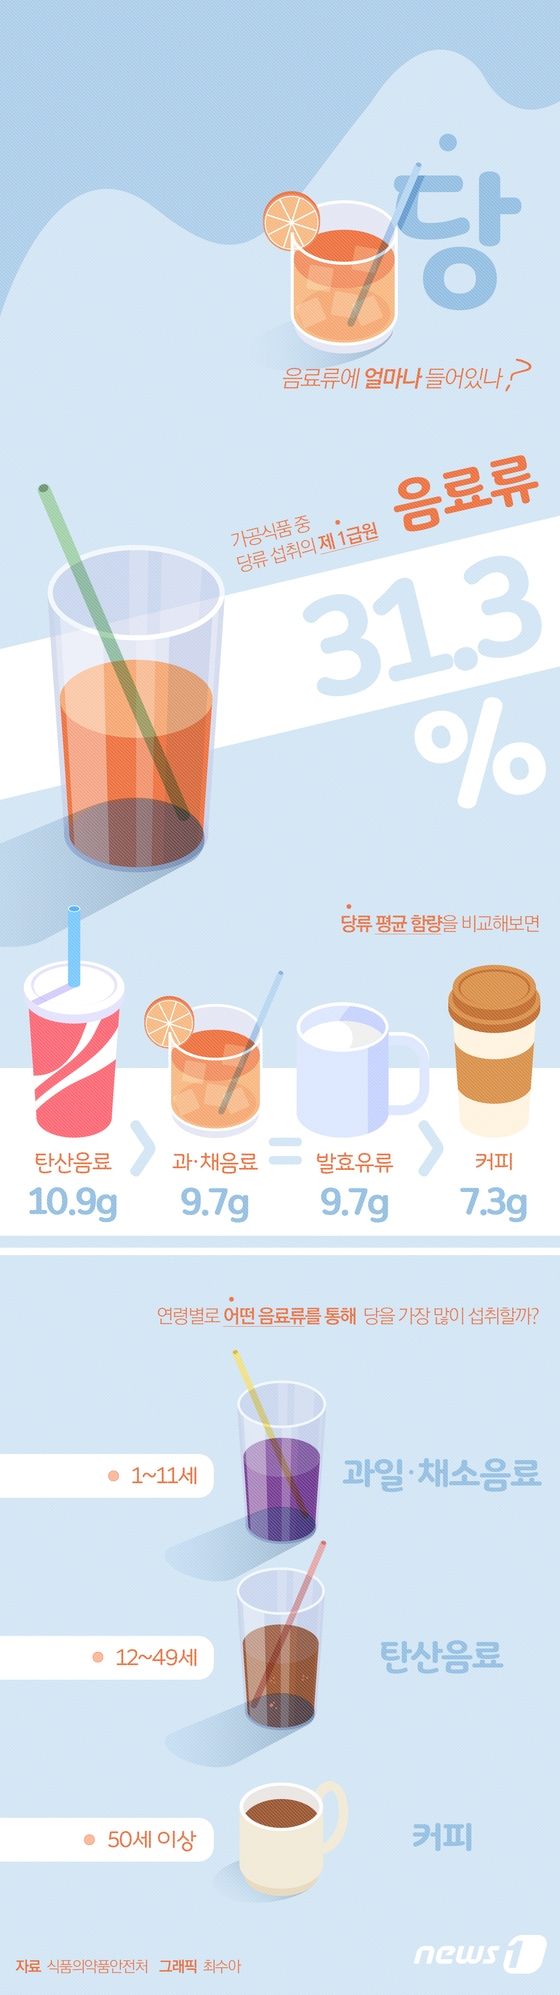 [그래픽뉴스] 당(糖), 음료류에 얼마나 들어있나?